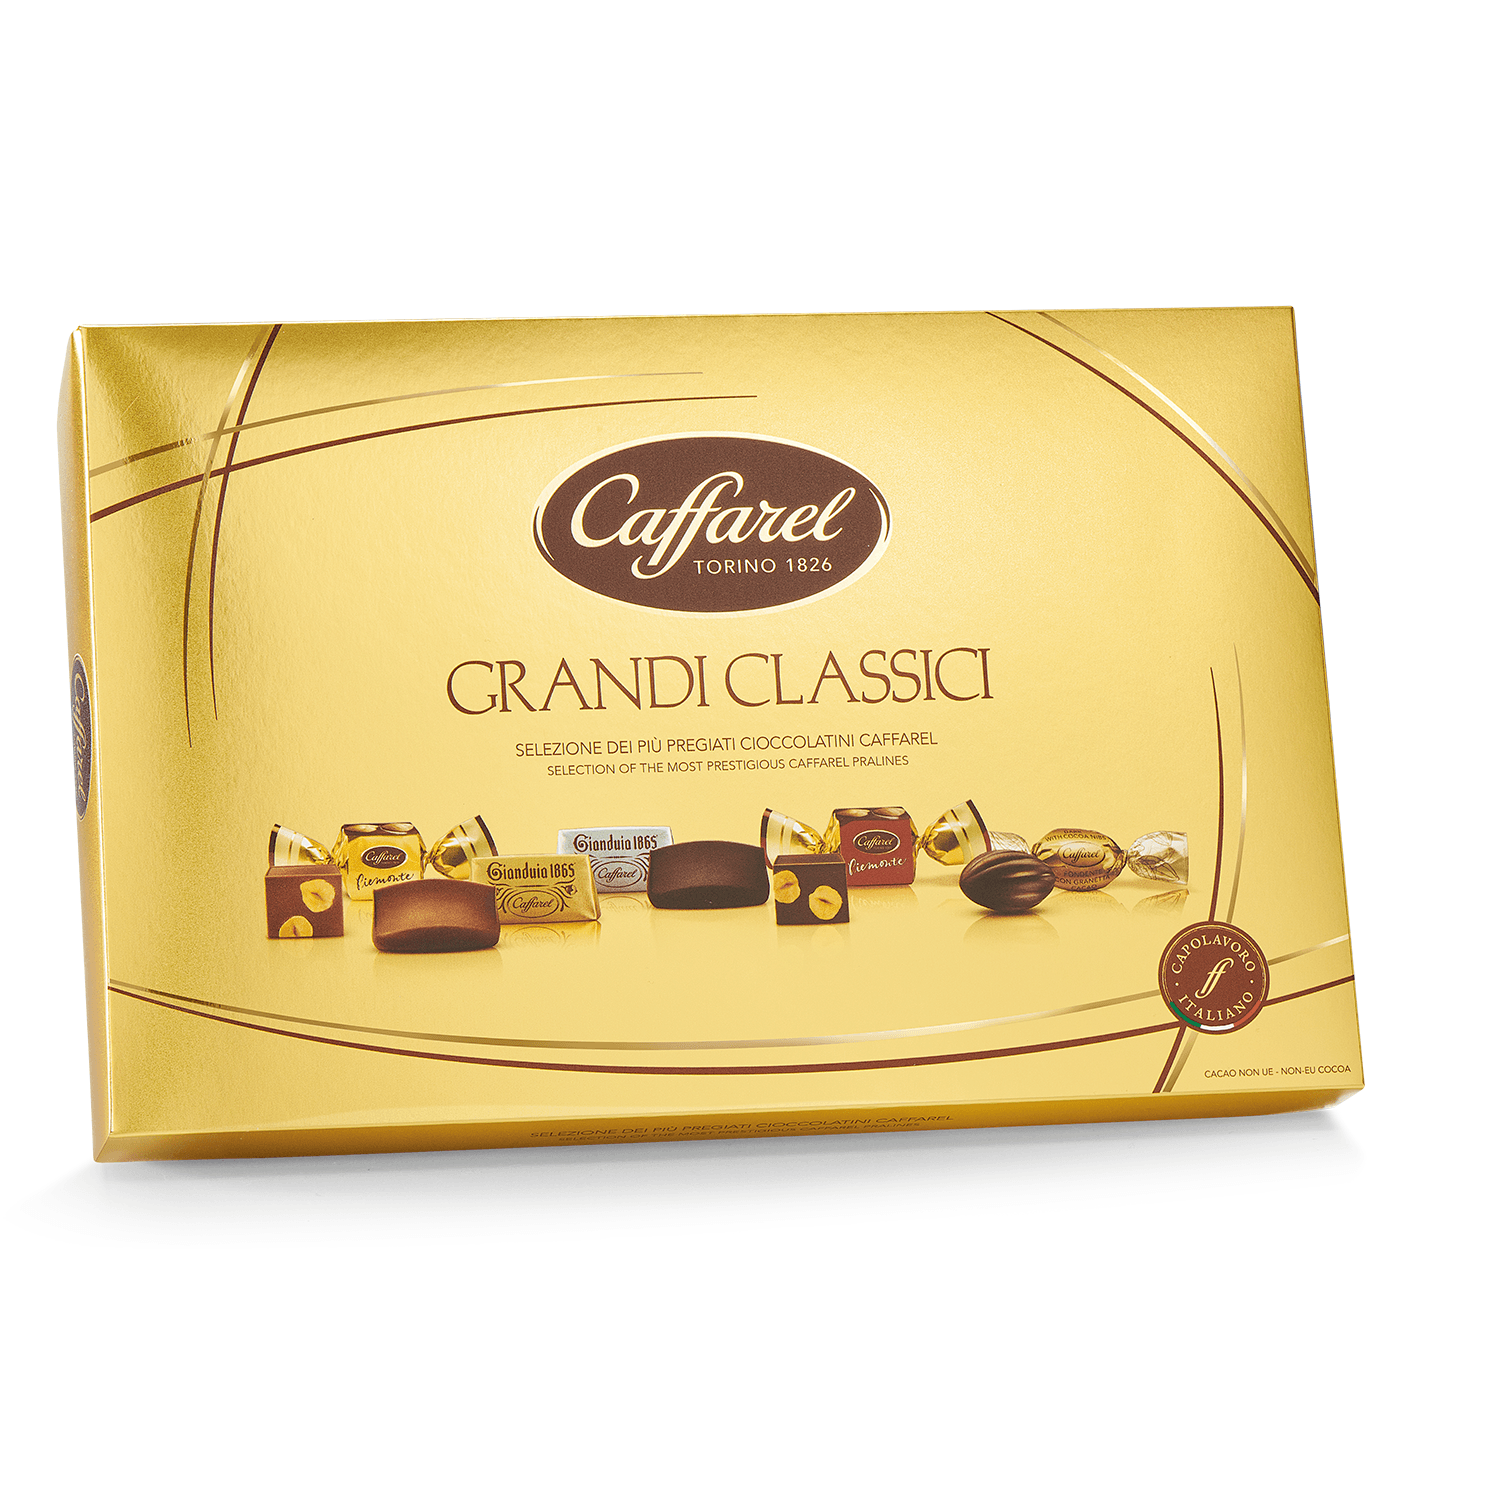 http://casadelbiscotto.it/cdn/shop/products/i-grandi-classici-cioccolatini-assortiti-scatola-regalo-gr-350-caffarel.png?v=1642464005